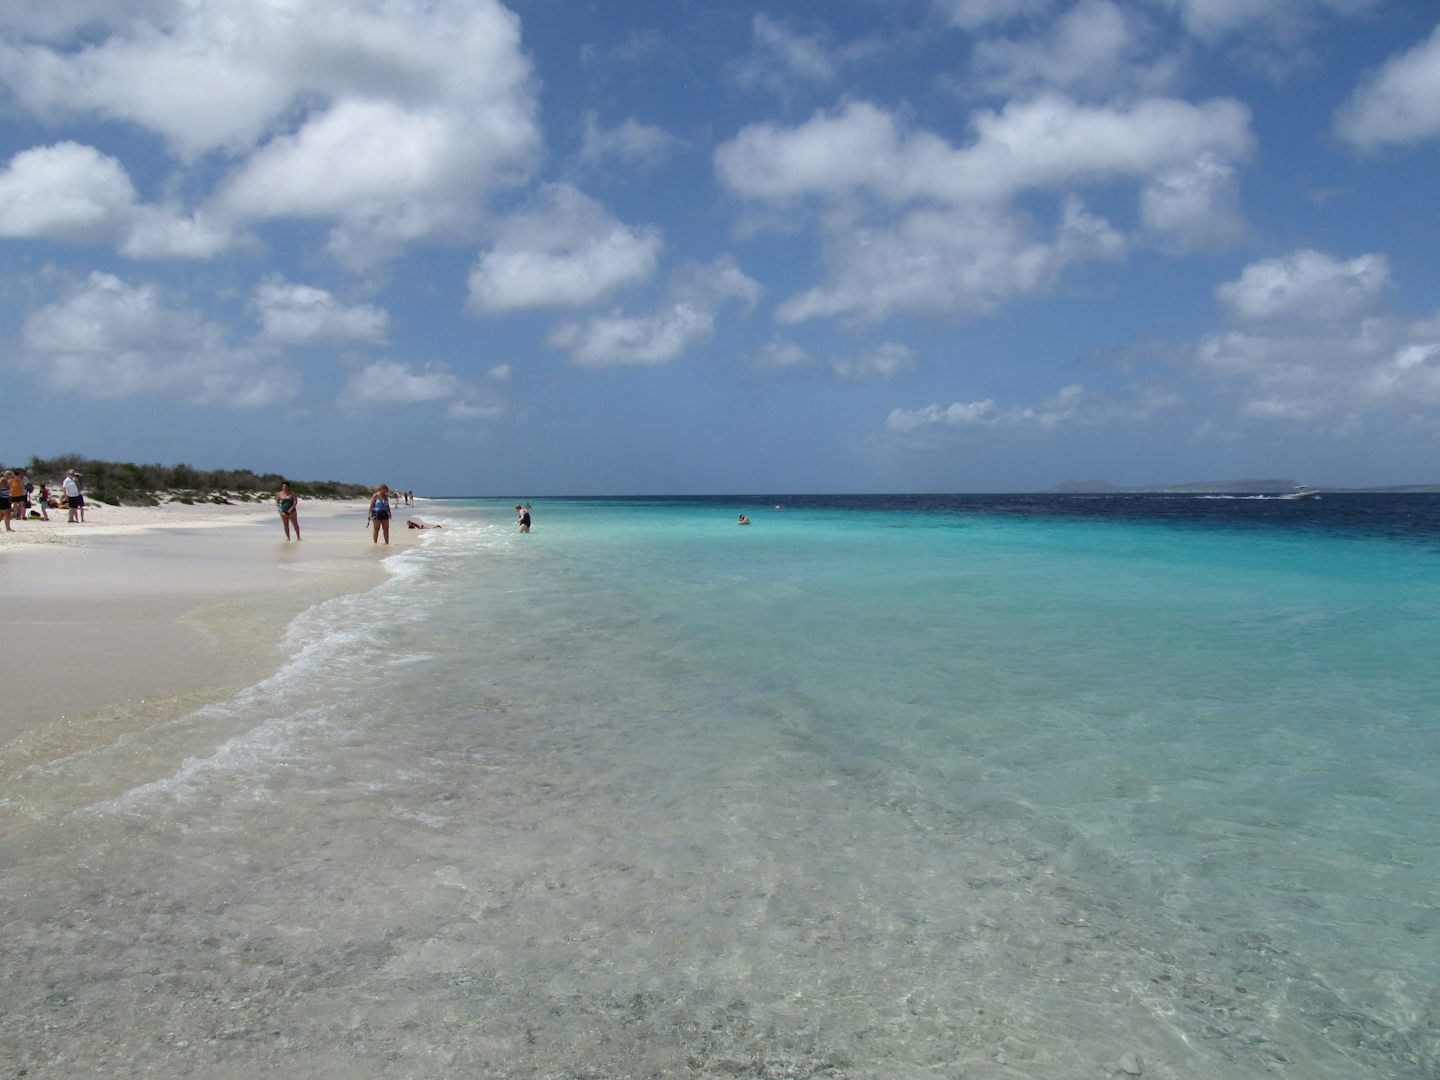 The beach on Klein Bonaire.